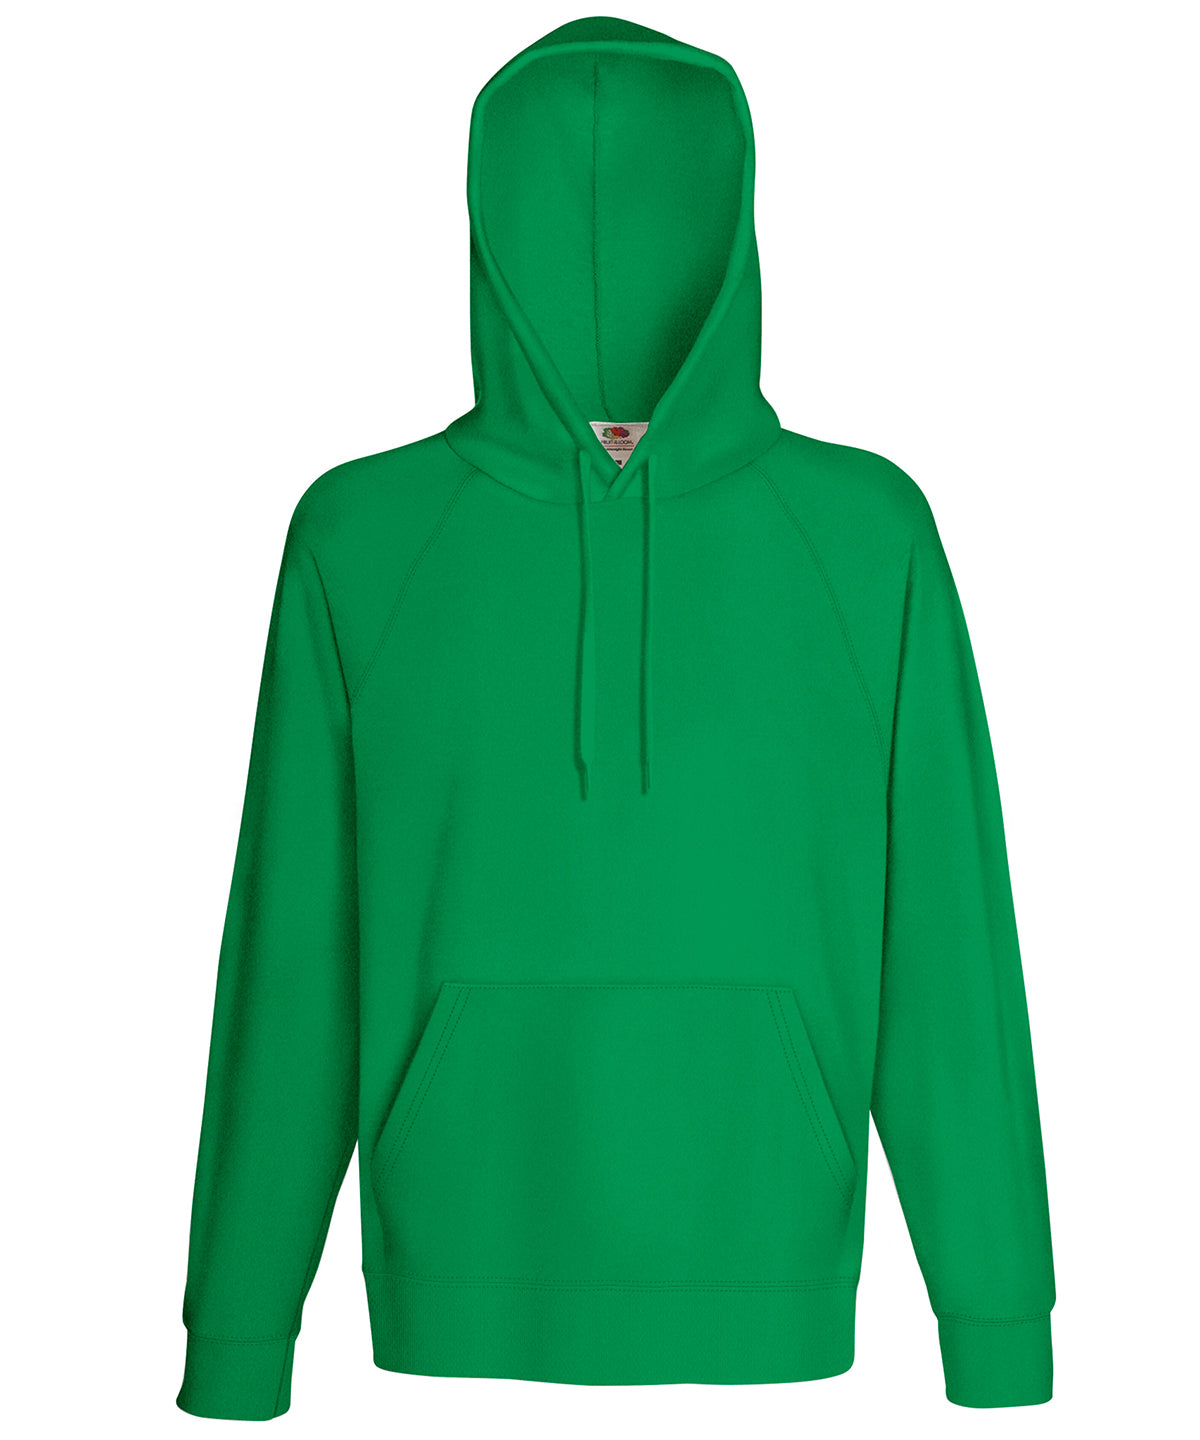 Personalised Hoodies - Black Fruit of the Loom Lightweight hooded sweatshirt